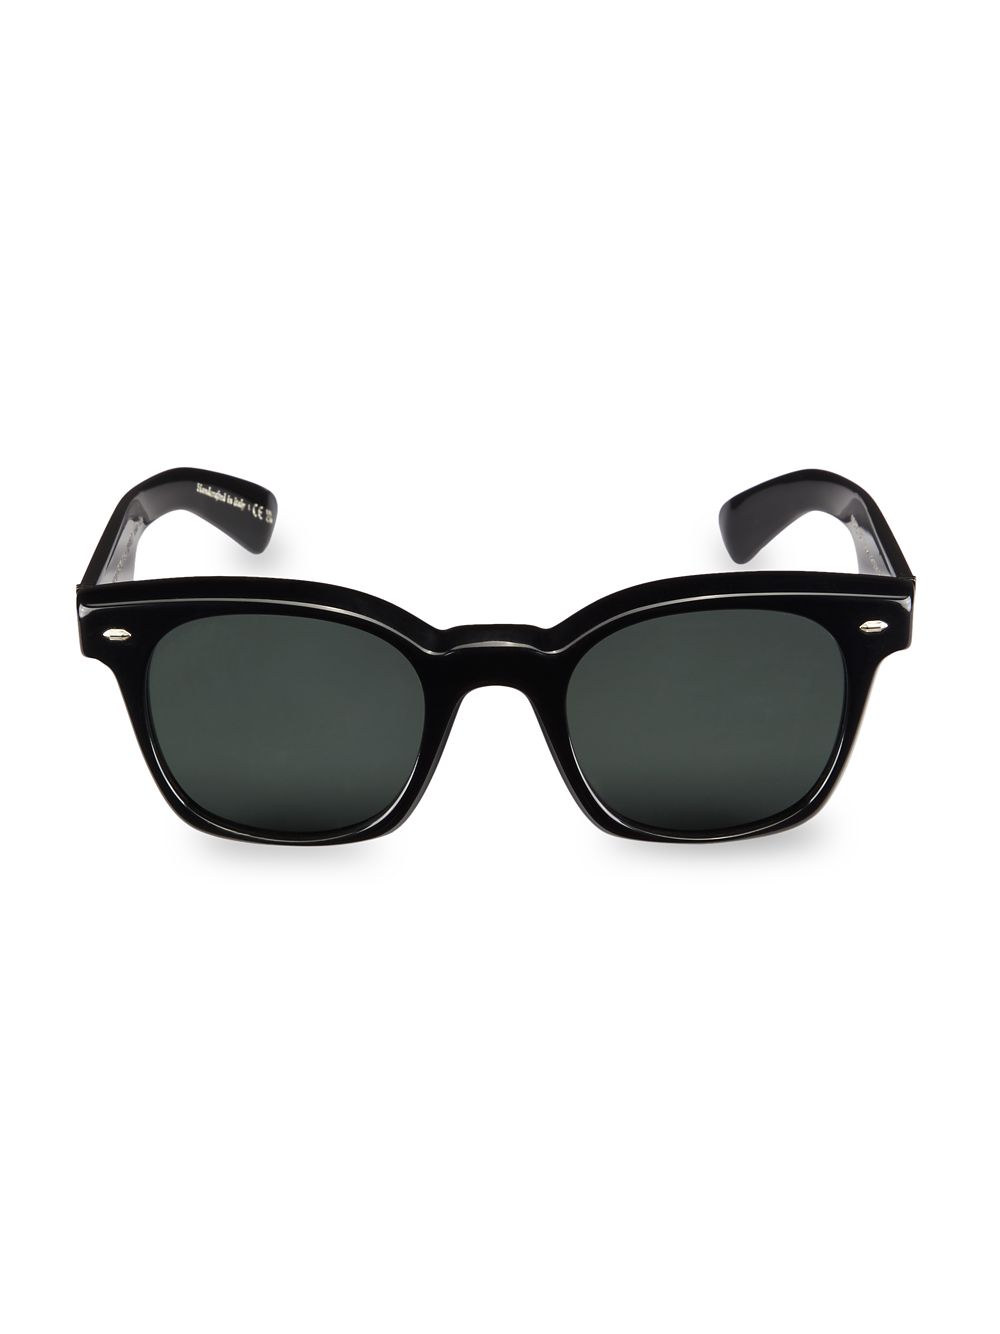 Прямоугольные солнцезащитные очки Merceaux 50 мм Oliver Peoples, черный